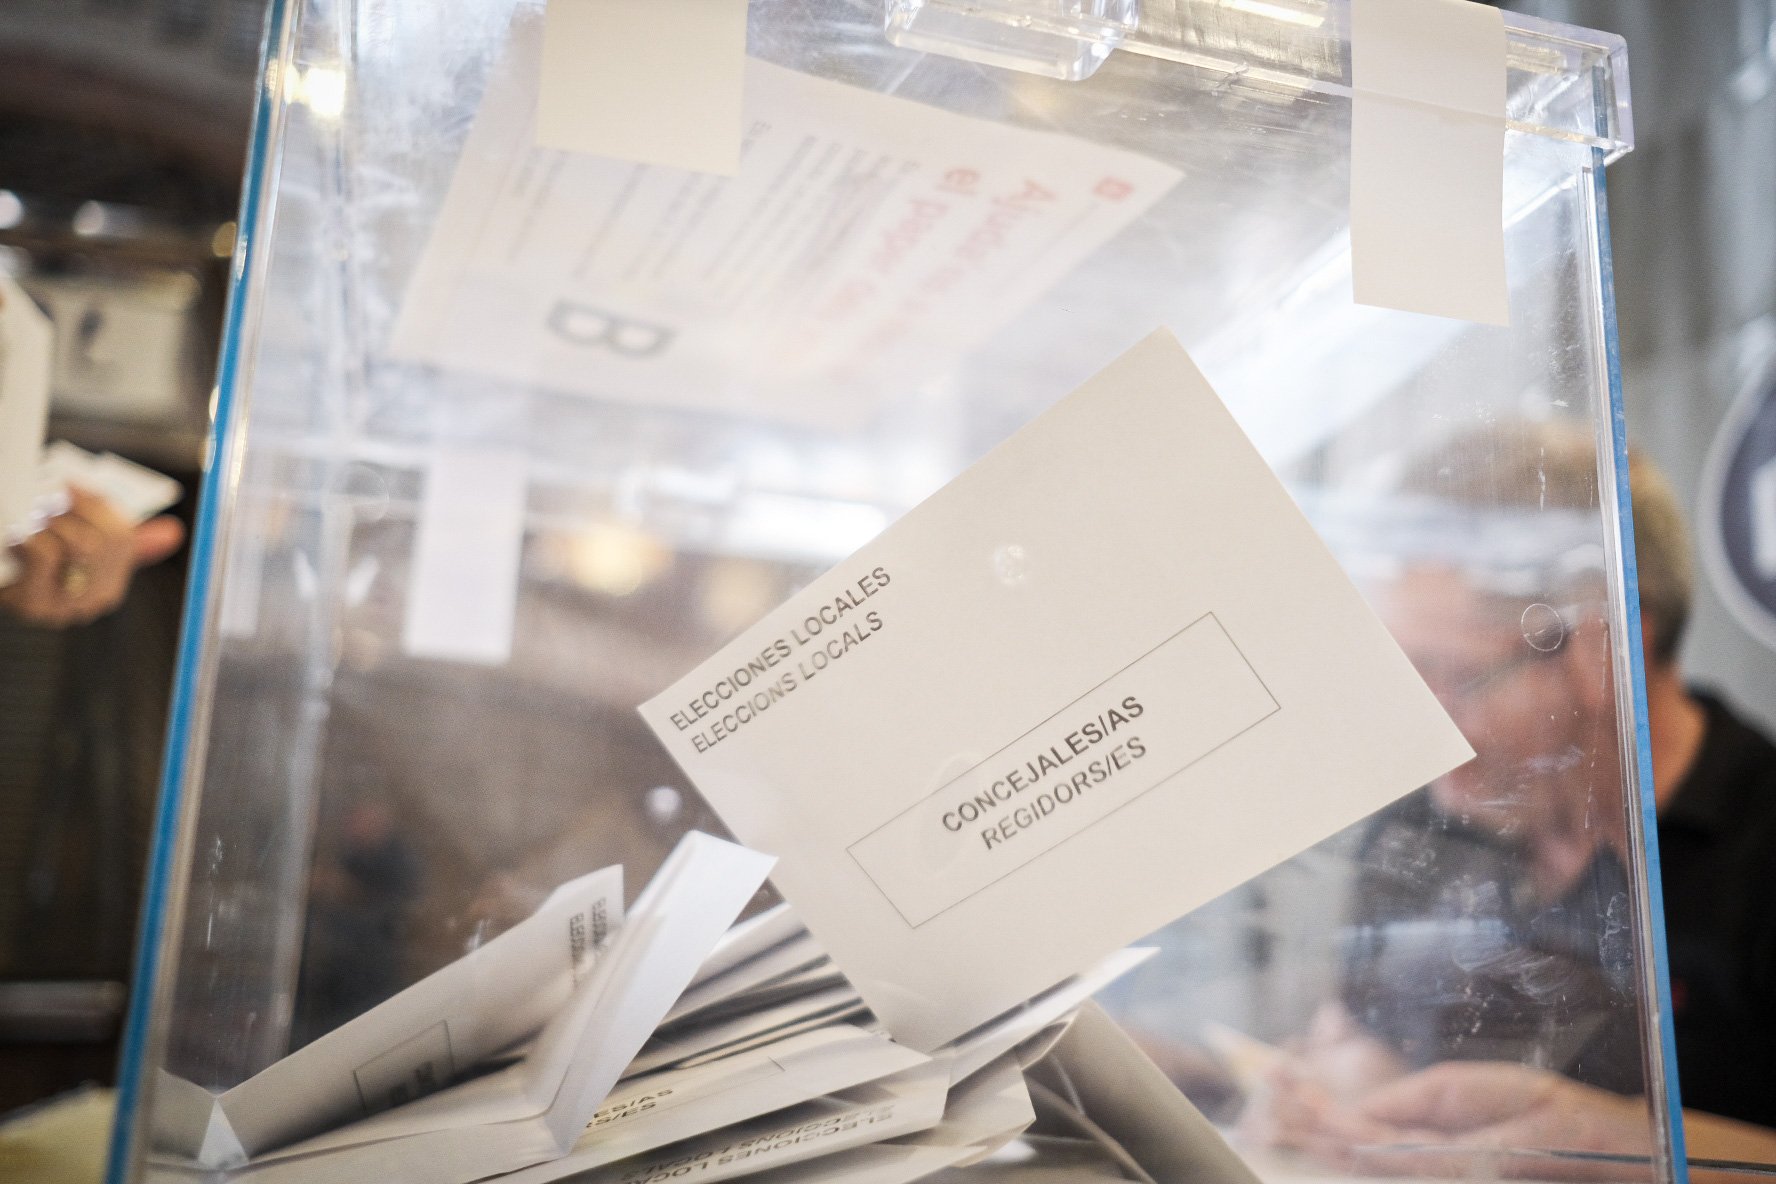 Collboni sumaria 13 regidors en les eleccions municipals, segons una estimació a partir del Baròmetre